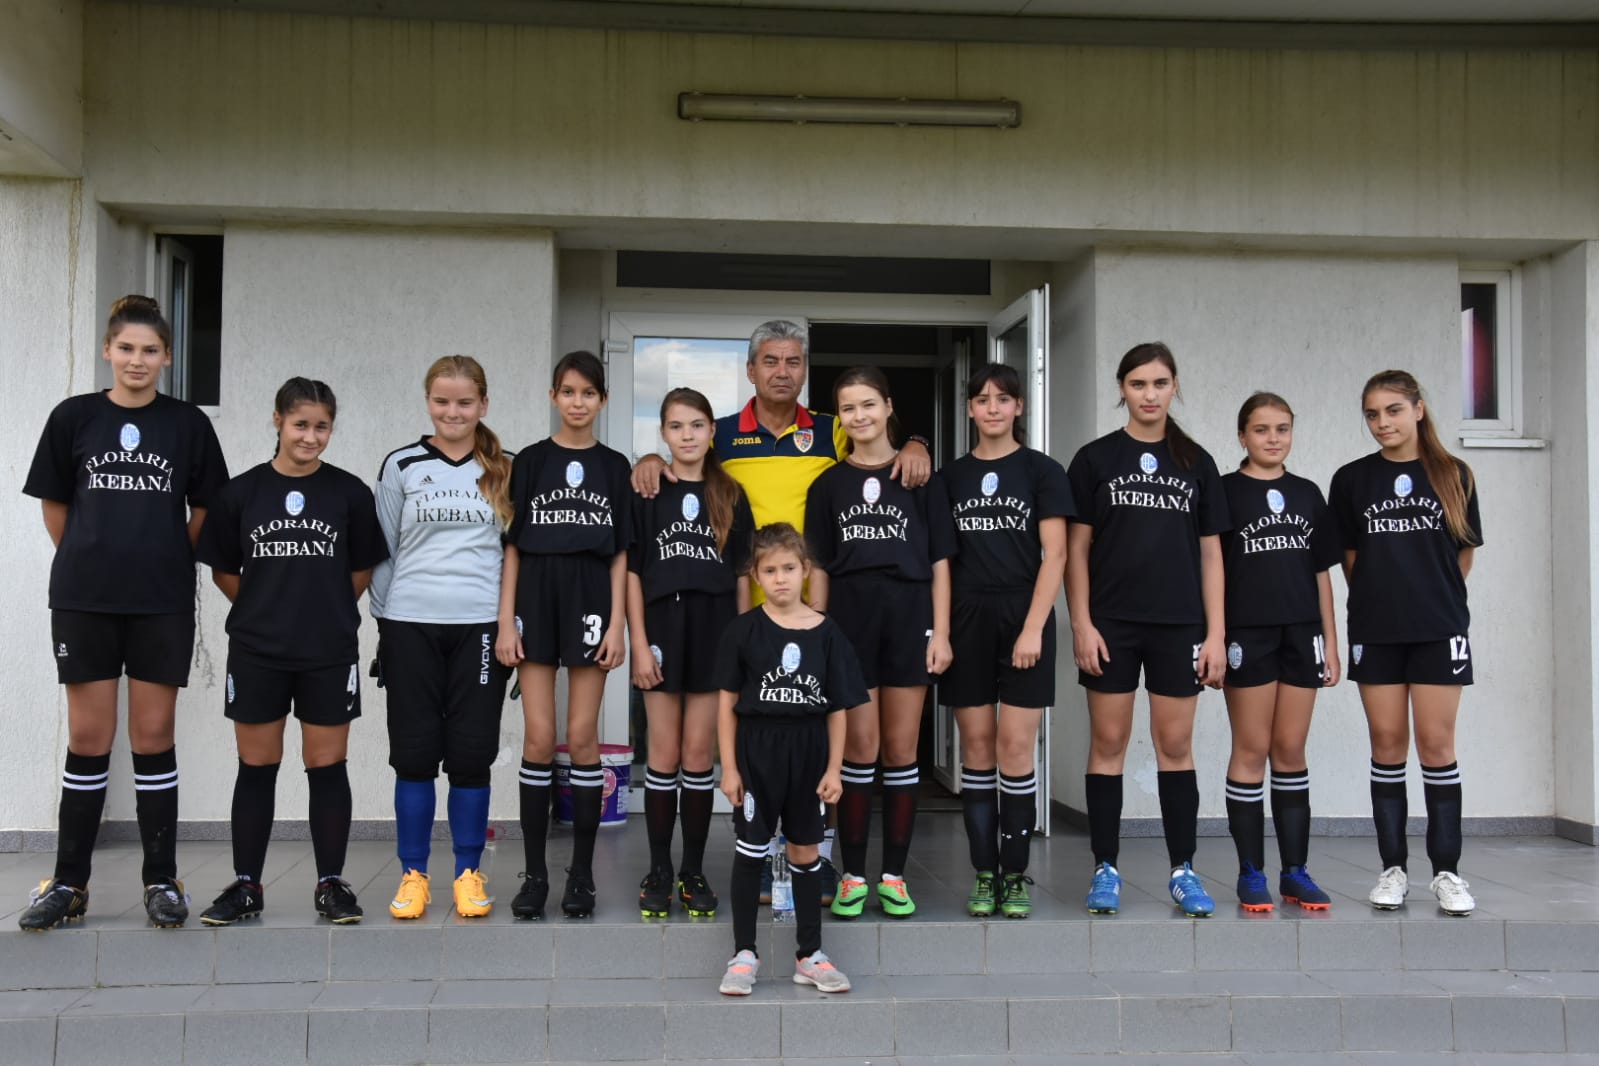 Viziunea clubului CSM Pașcani: ”Vrem să le oferim fetelor în continuare bucuria de a juca fotbal”